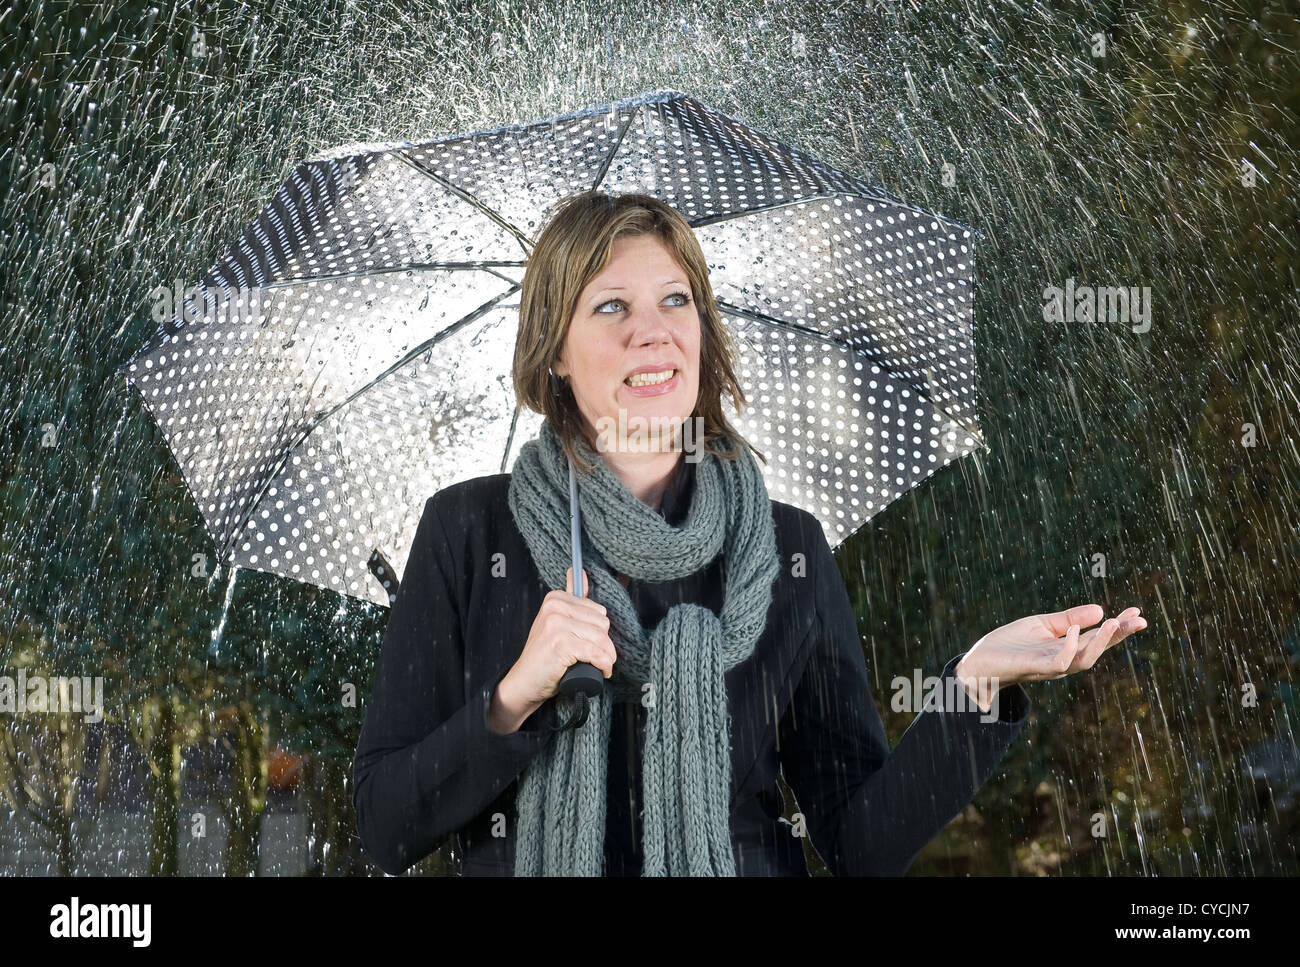 Une femme sous un parapluie lors de fortes pluies Banque D'Images